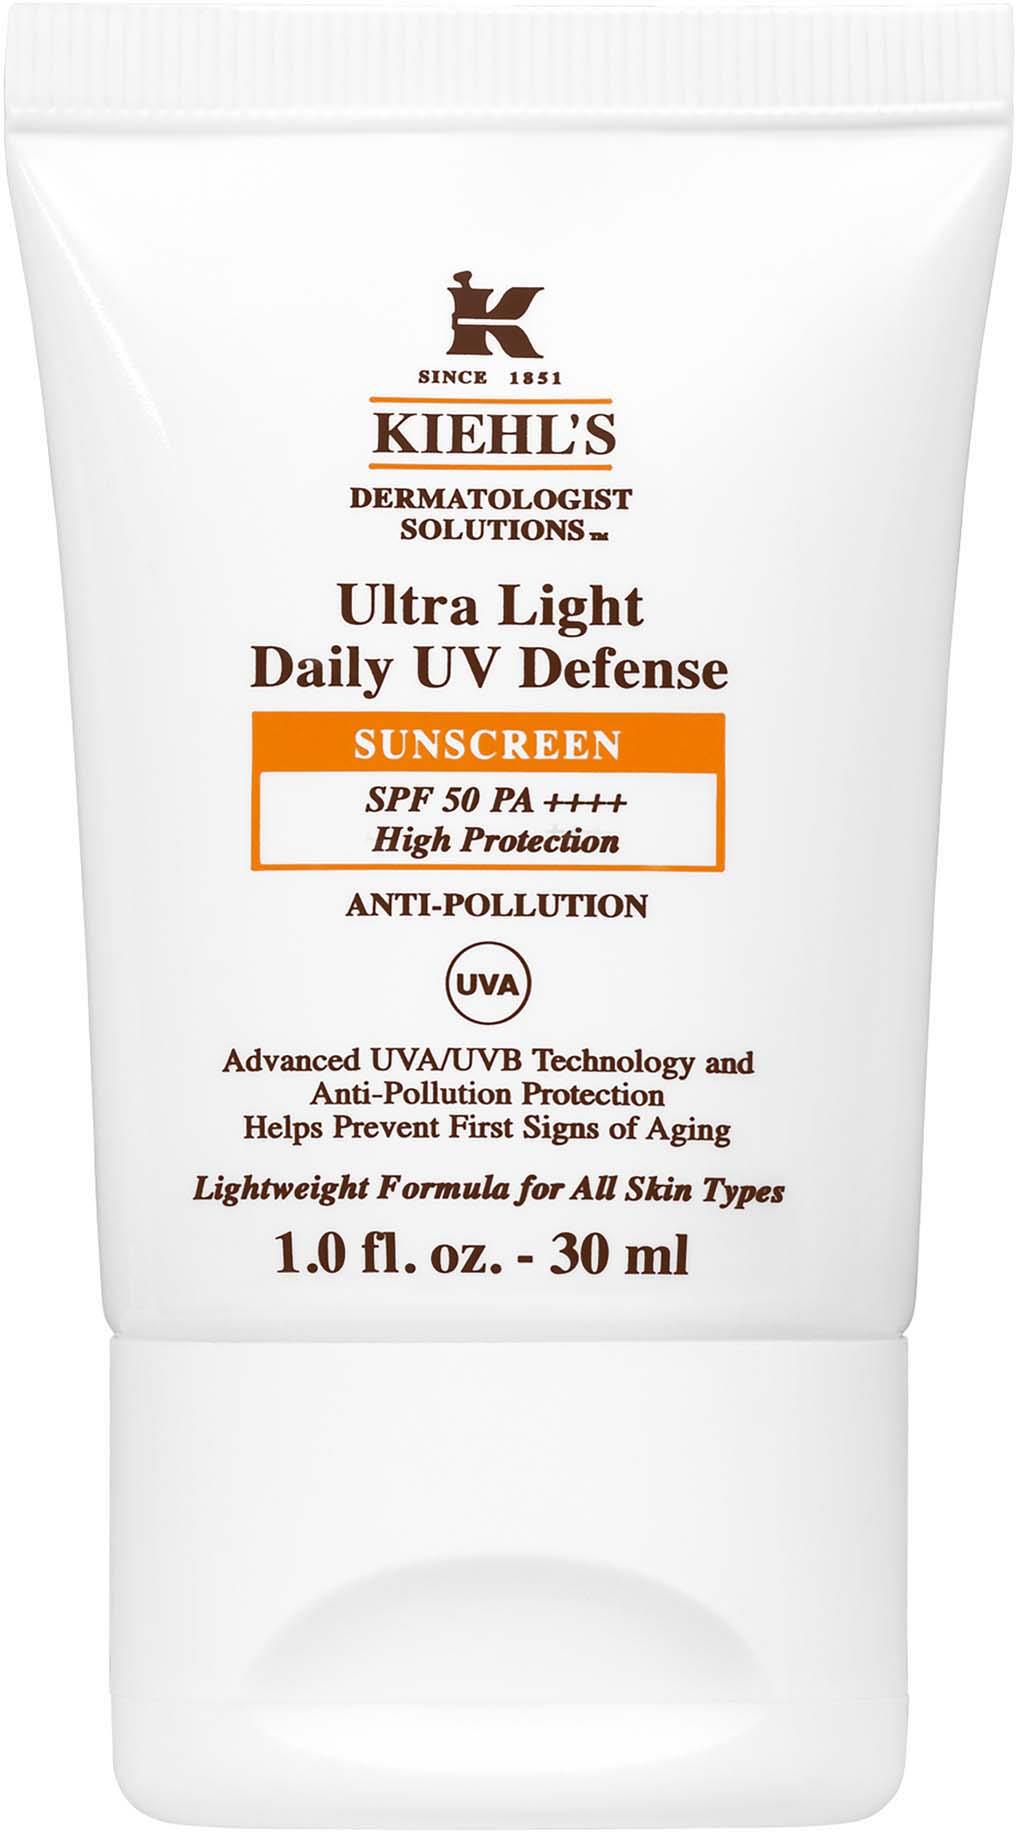 Kiehl's Solutions Ultra Light Daily UV Defense SPF 50 30 ml | lyko.com